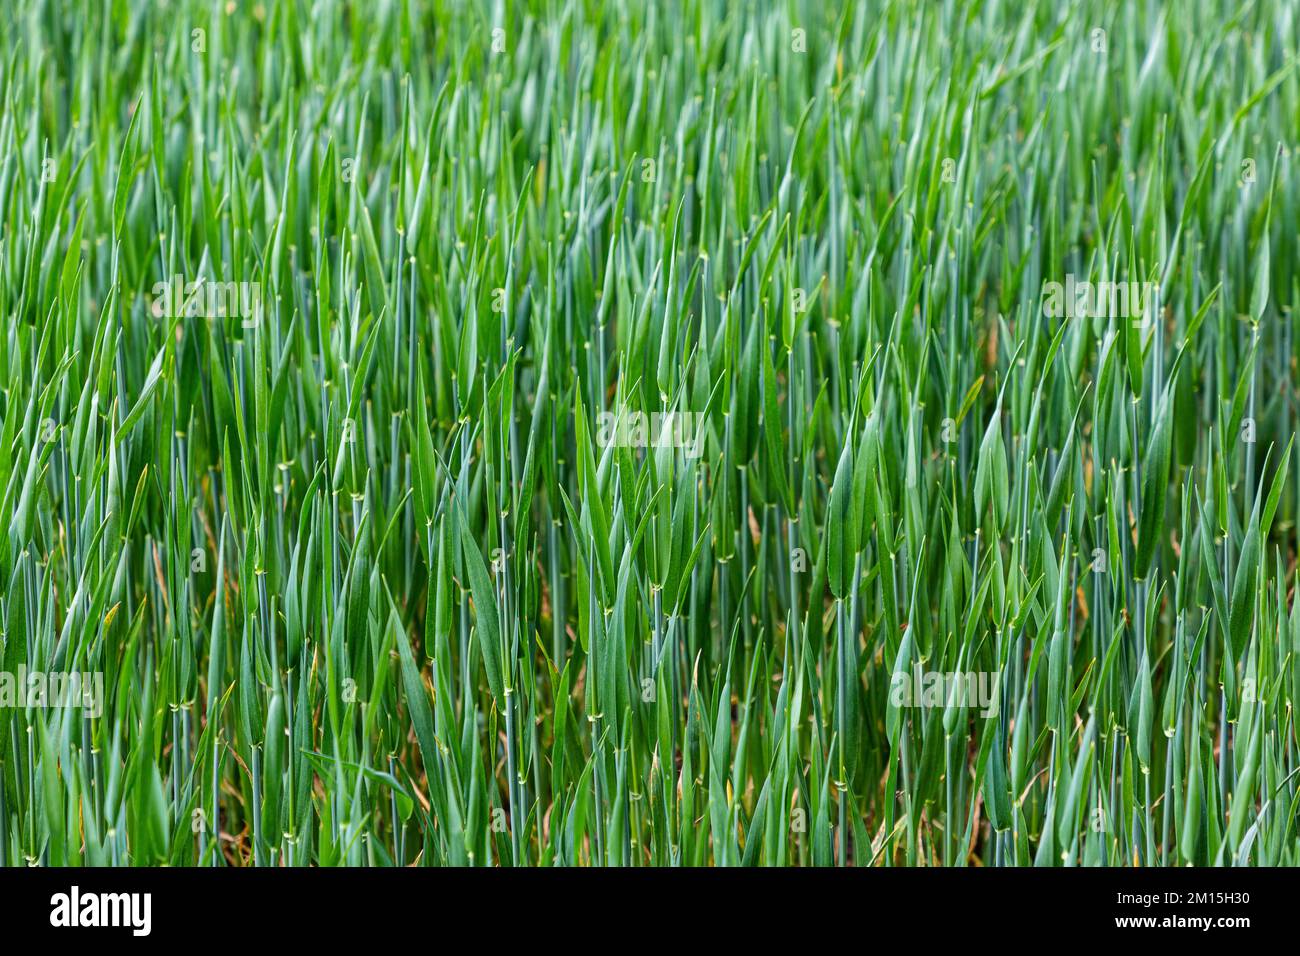 Getreide wächst auf einem Feld. Die Stiele glänzen grün, blau und türkis. Stockfoto